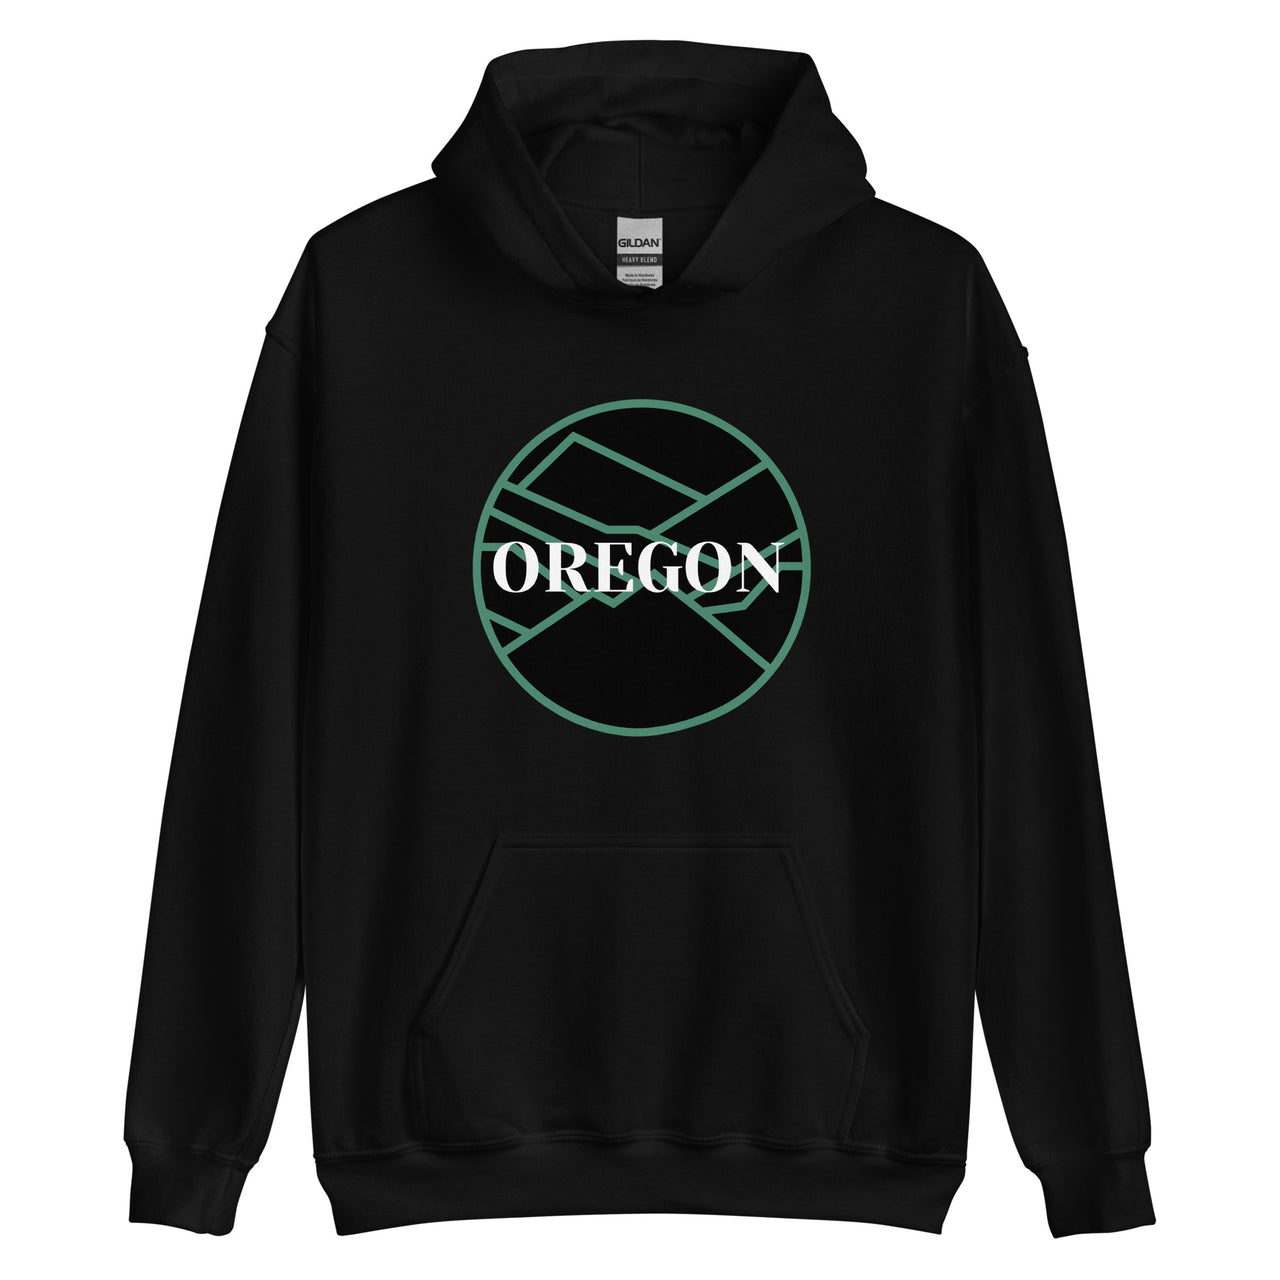 OREGON - Green/Black - Unisex Hoodie